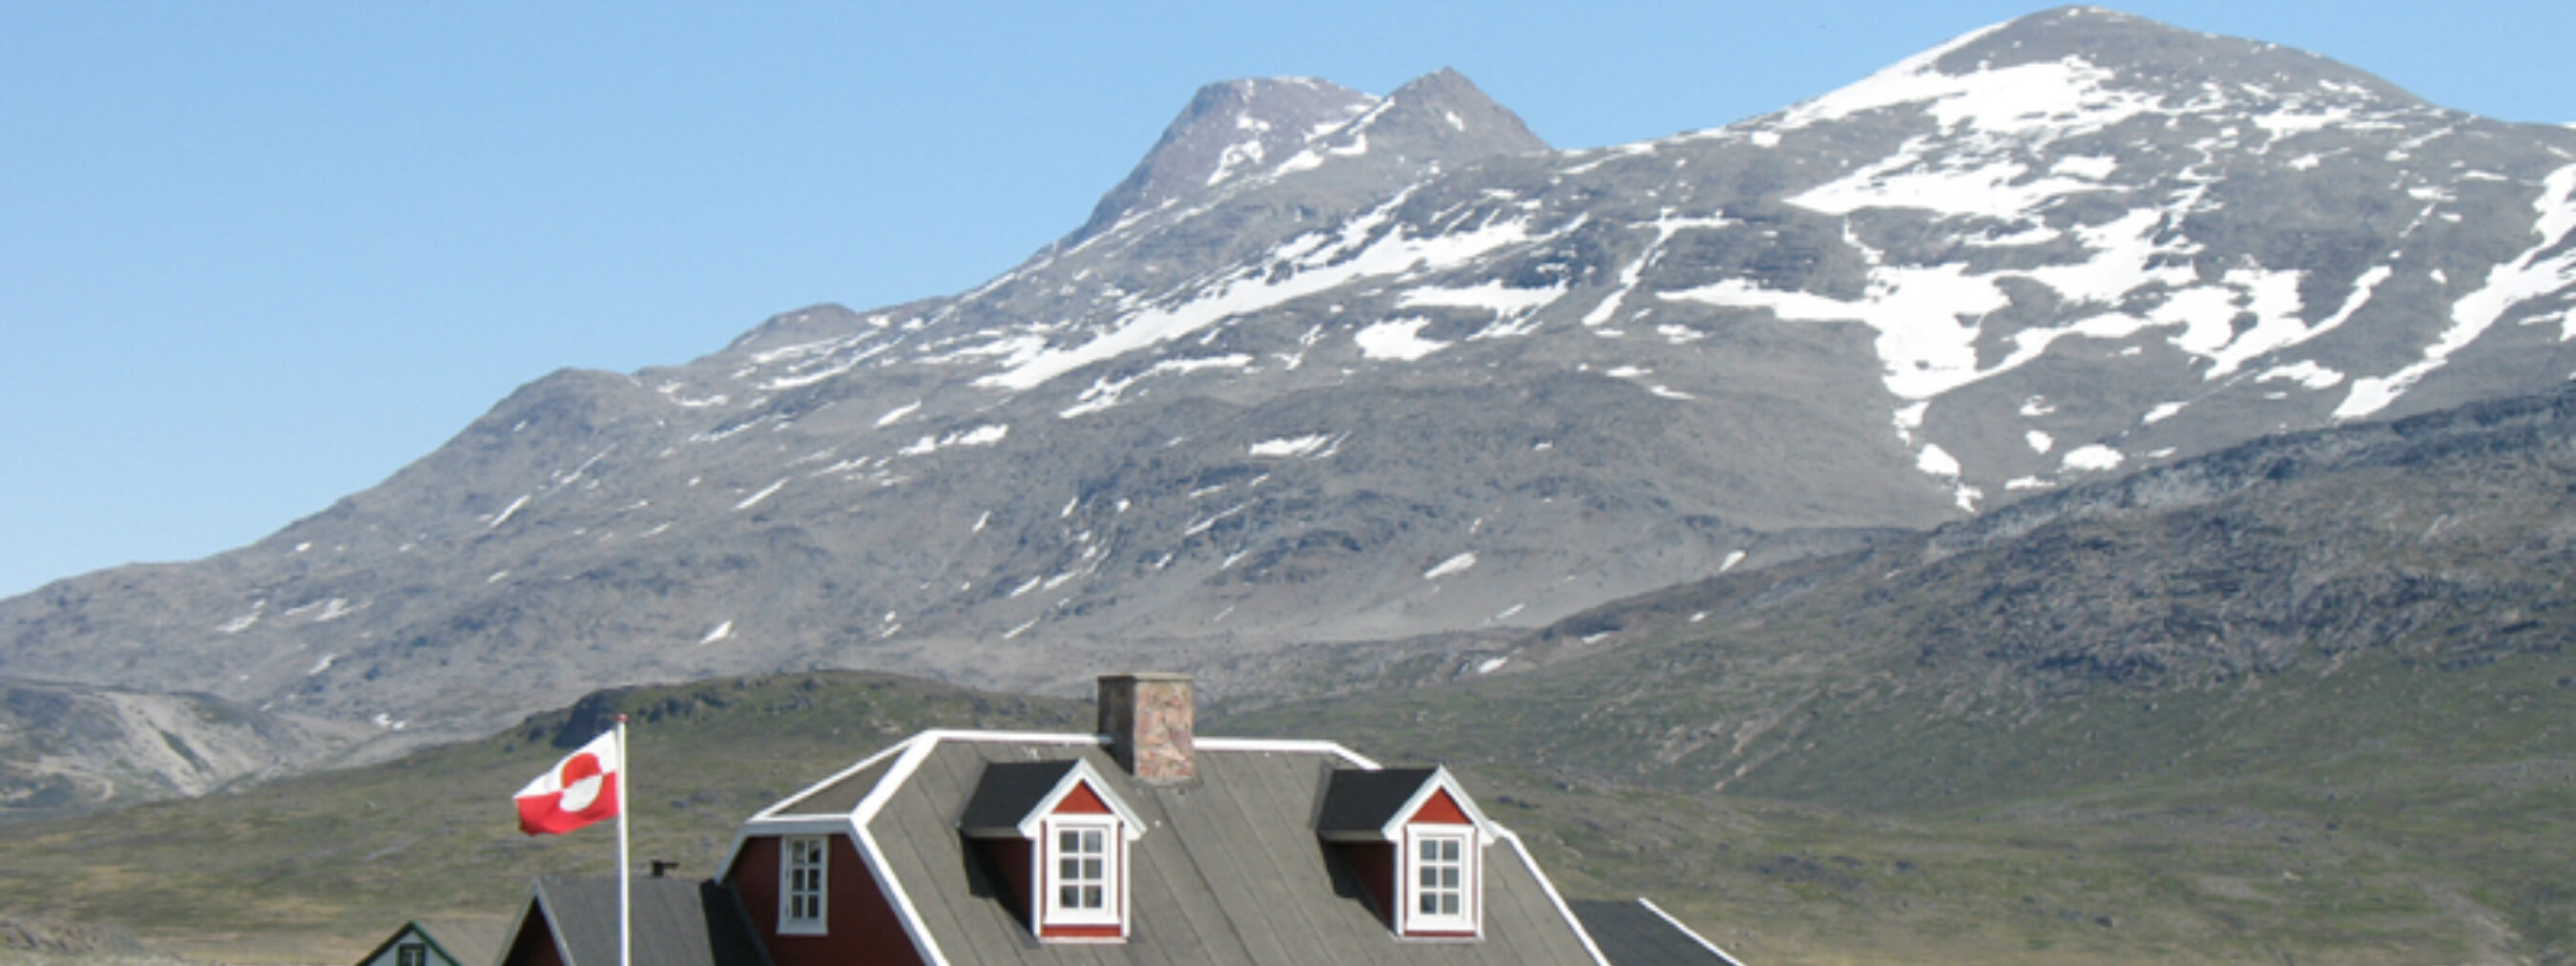 Südgrönland: Siedlung Igaliku
Steinhaus mit Fahne im Garten
Im Hintergrund leicht mit Schnee bedeckte Berge